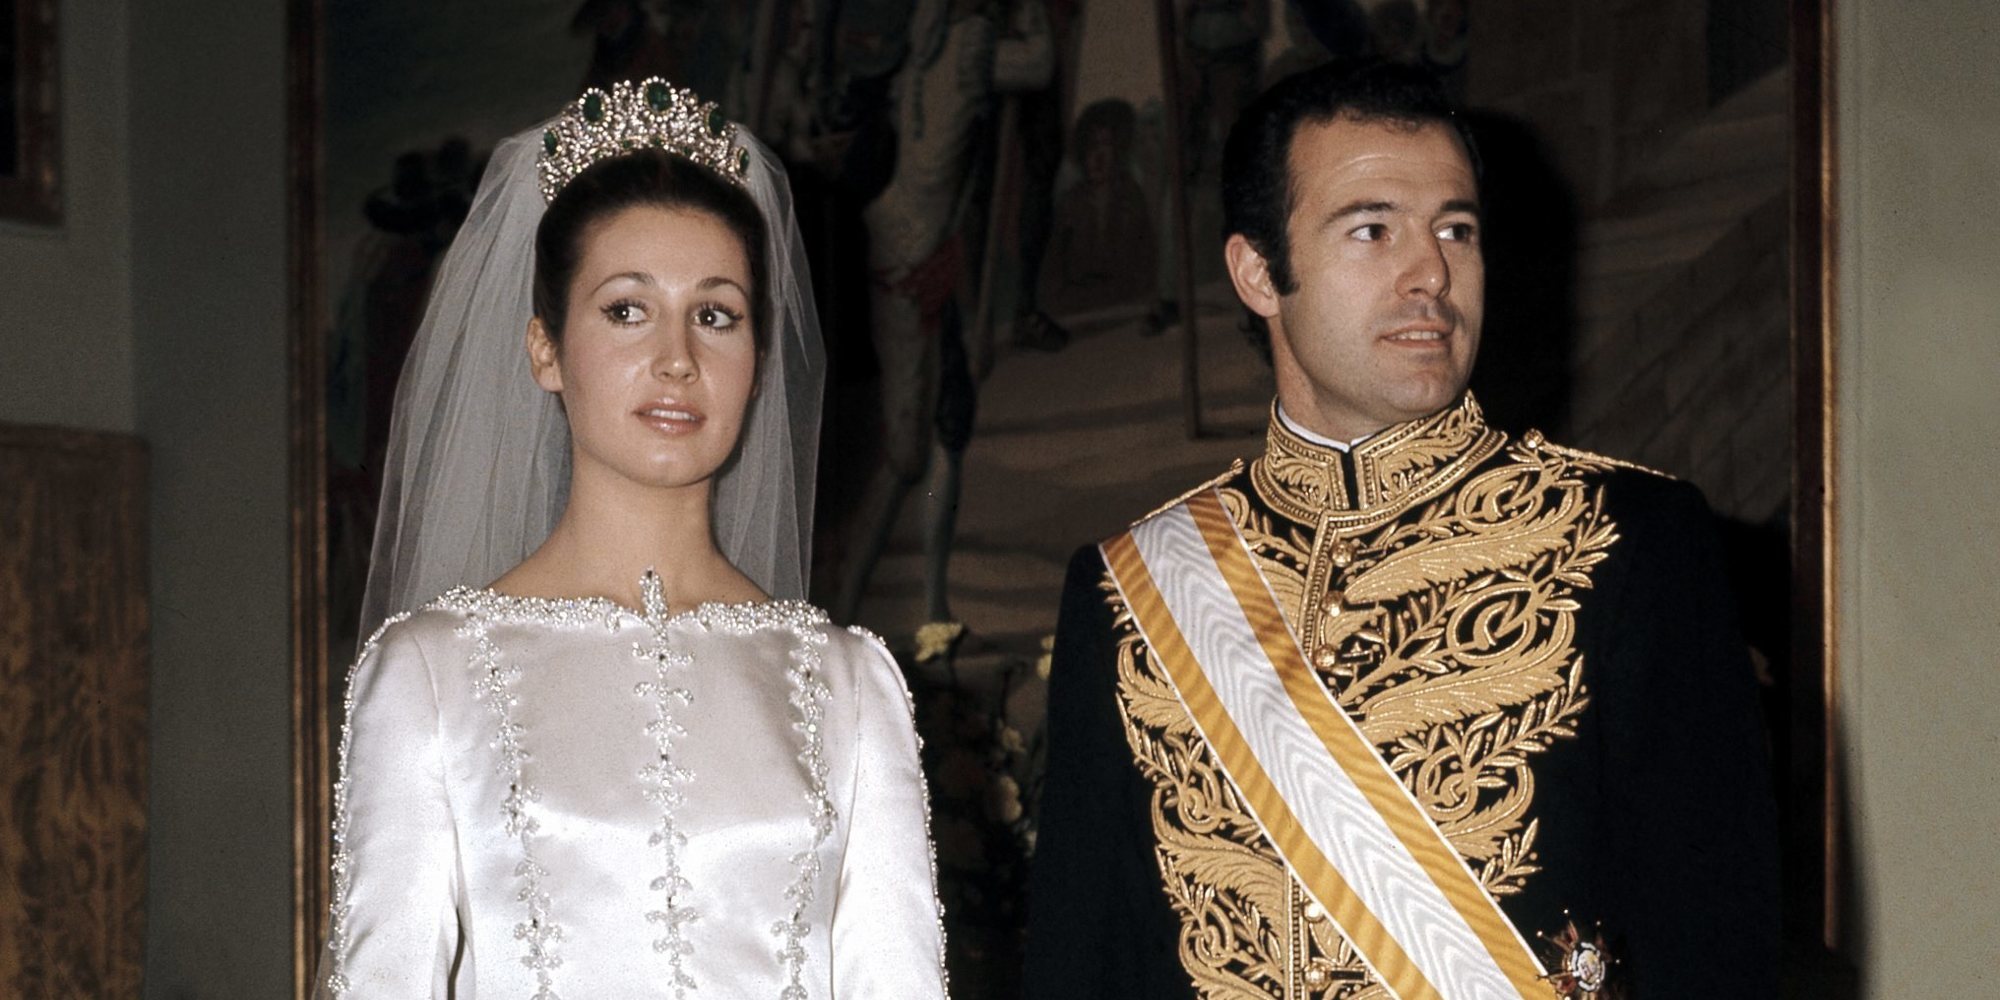 La boda que pudo hacer Reina de España a Carmen Martínez-Bordiú: así se planeó su unión con Alfonso de Borbón